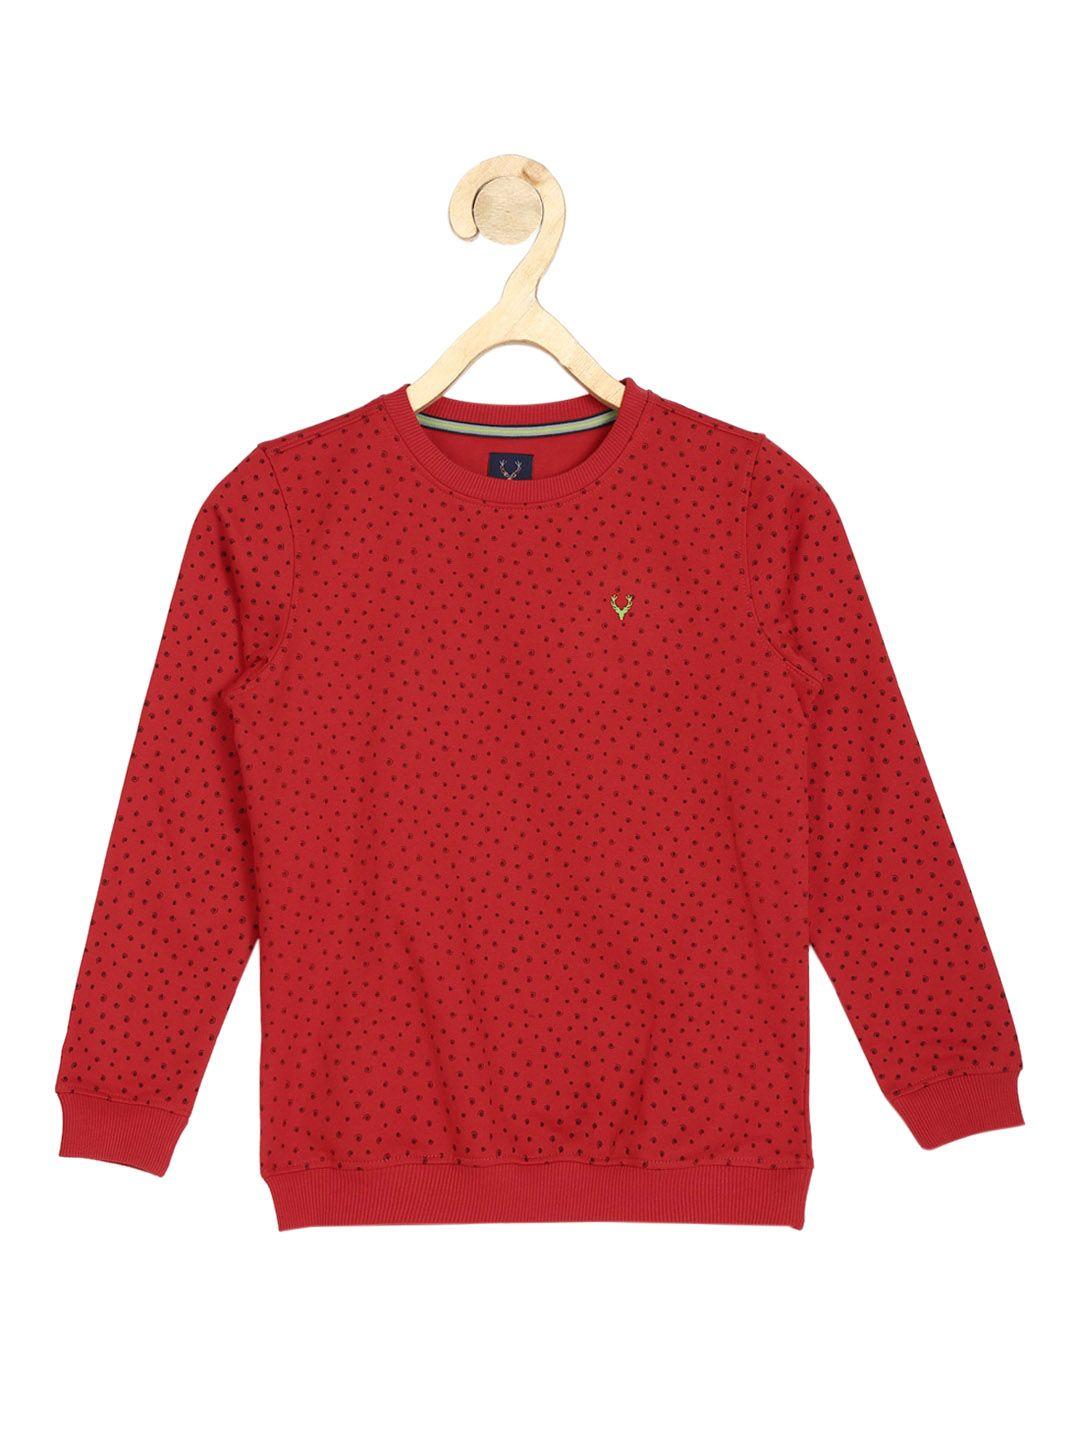 allen solly junior boys red printed sweatshirt